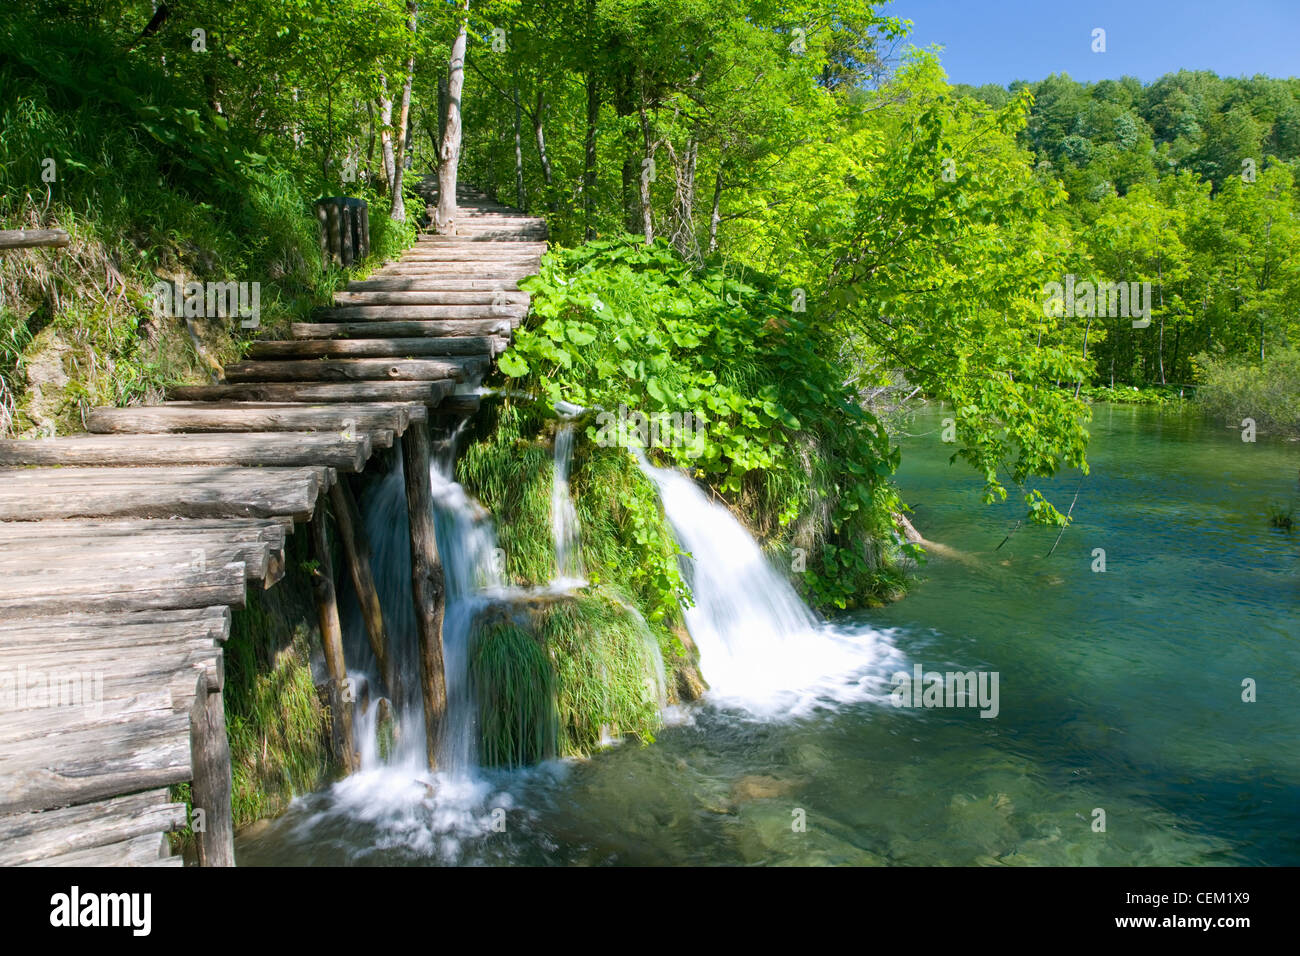 Le parc national des Lacs de Plitvice, Croatie, Lika-Senj. Promenade entre forêt au-dessus de cascades attrayant. Banque D'Images